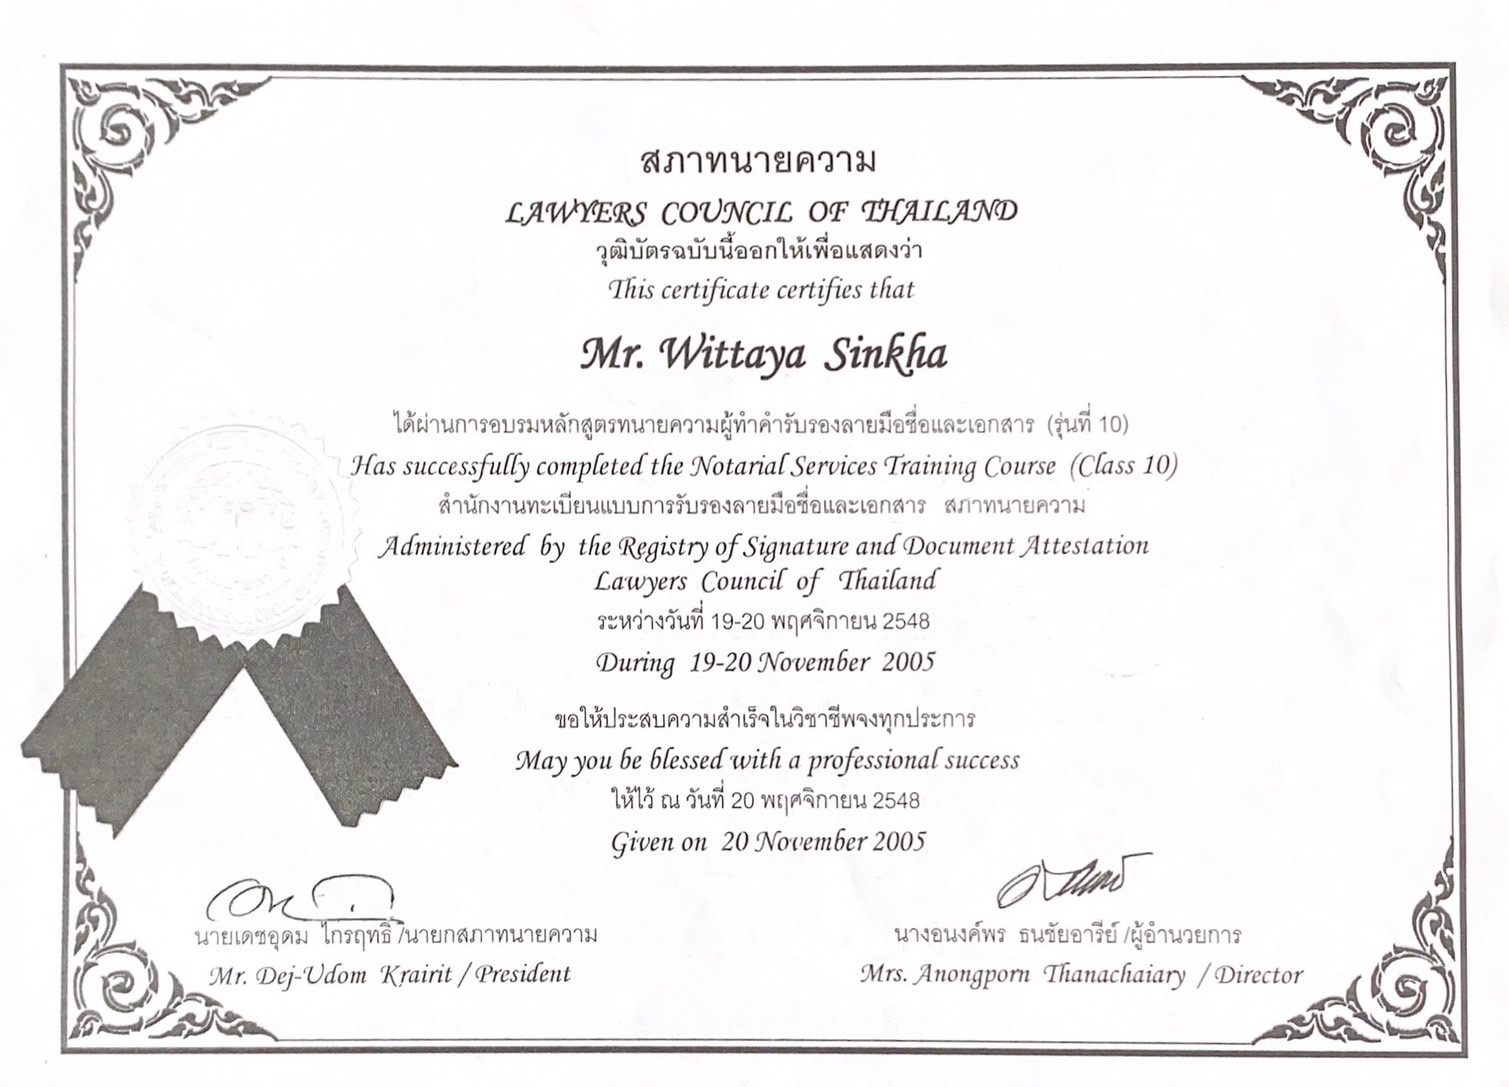 Legal Advisor Certificate